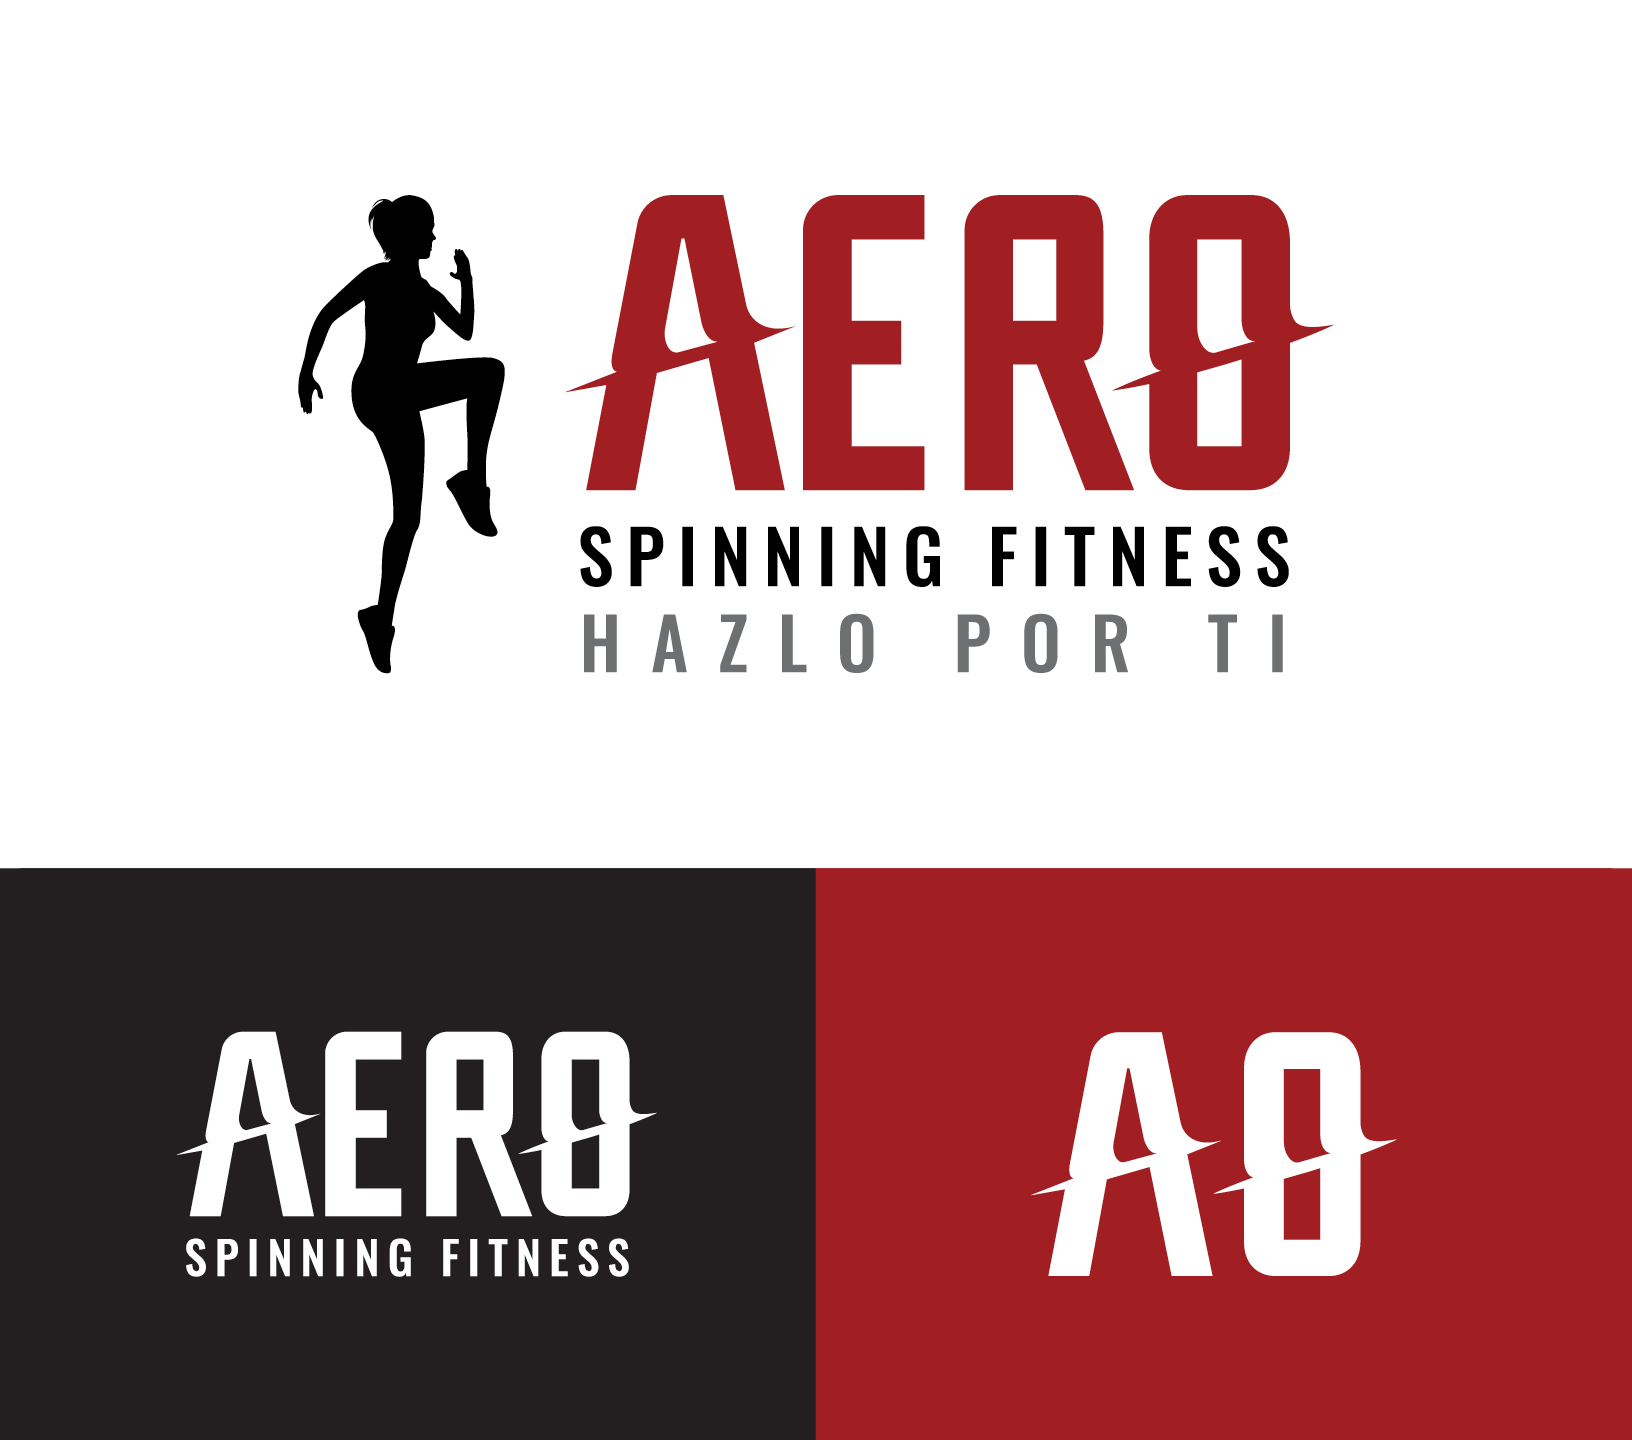 Aero Spinning Fitness lockup